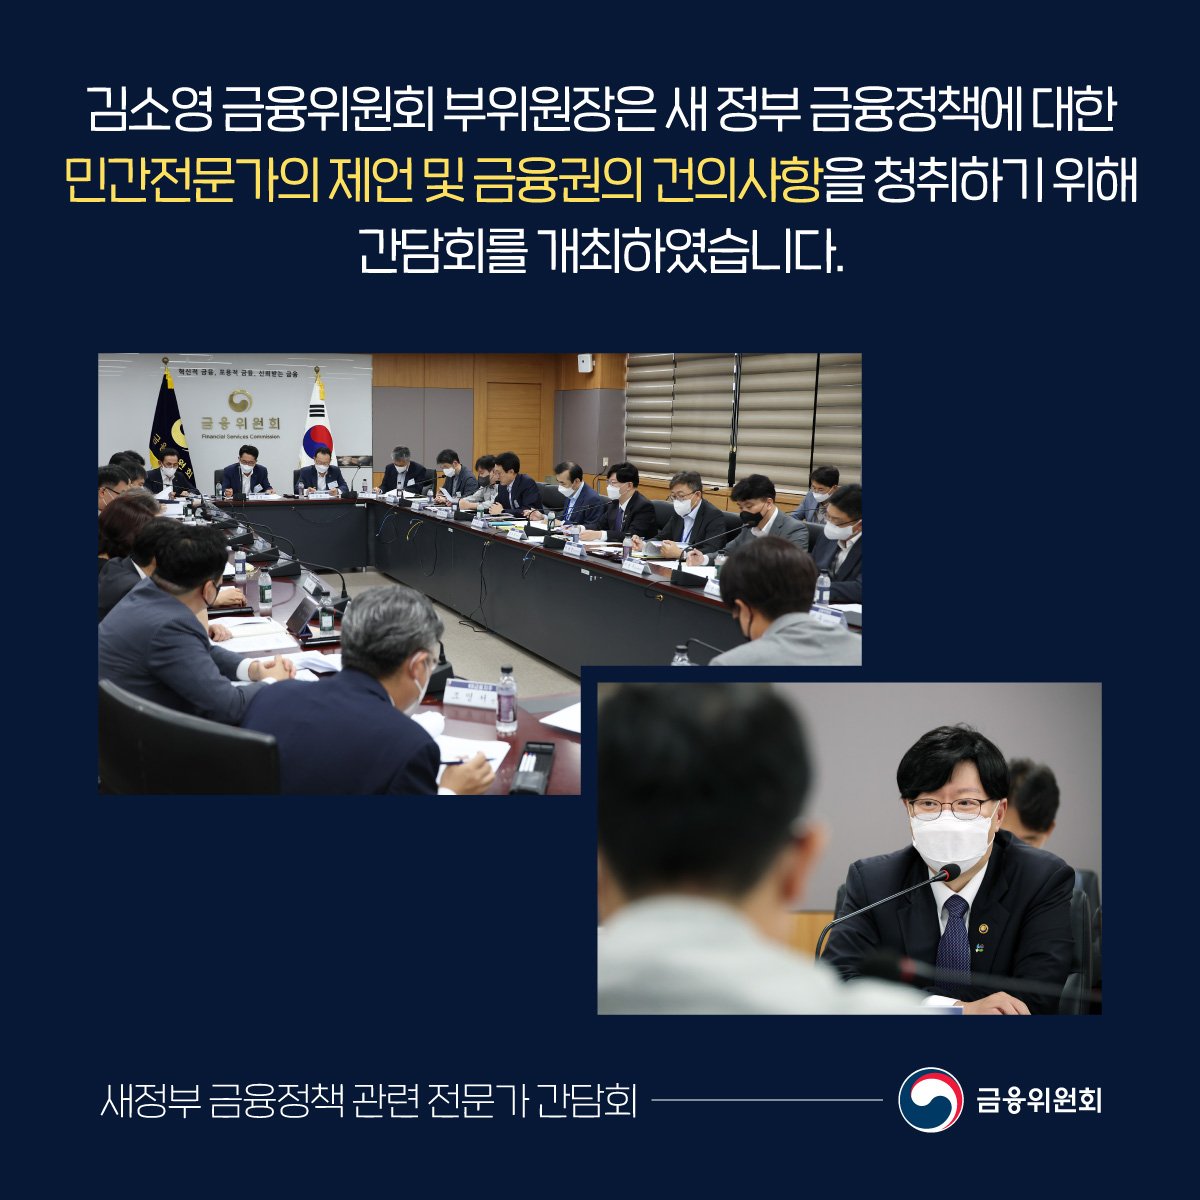 김소영 금융위원회 부위원장은 새 정부 금융정책에 대한 민간전문가의 제언 및 금융권의 건의사항을 청취하기 위해 간담회를 개최하였습니다.